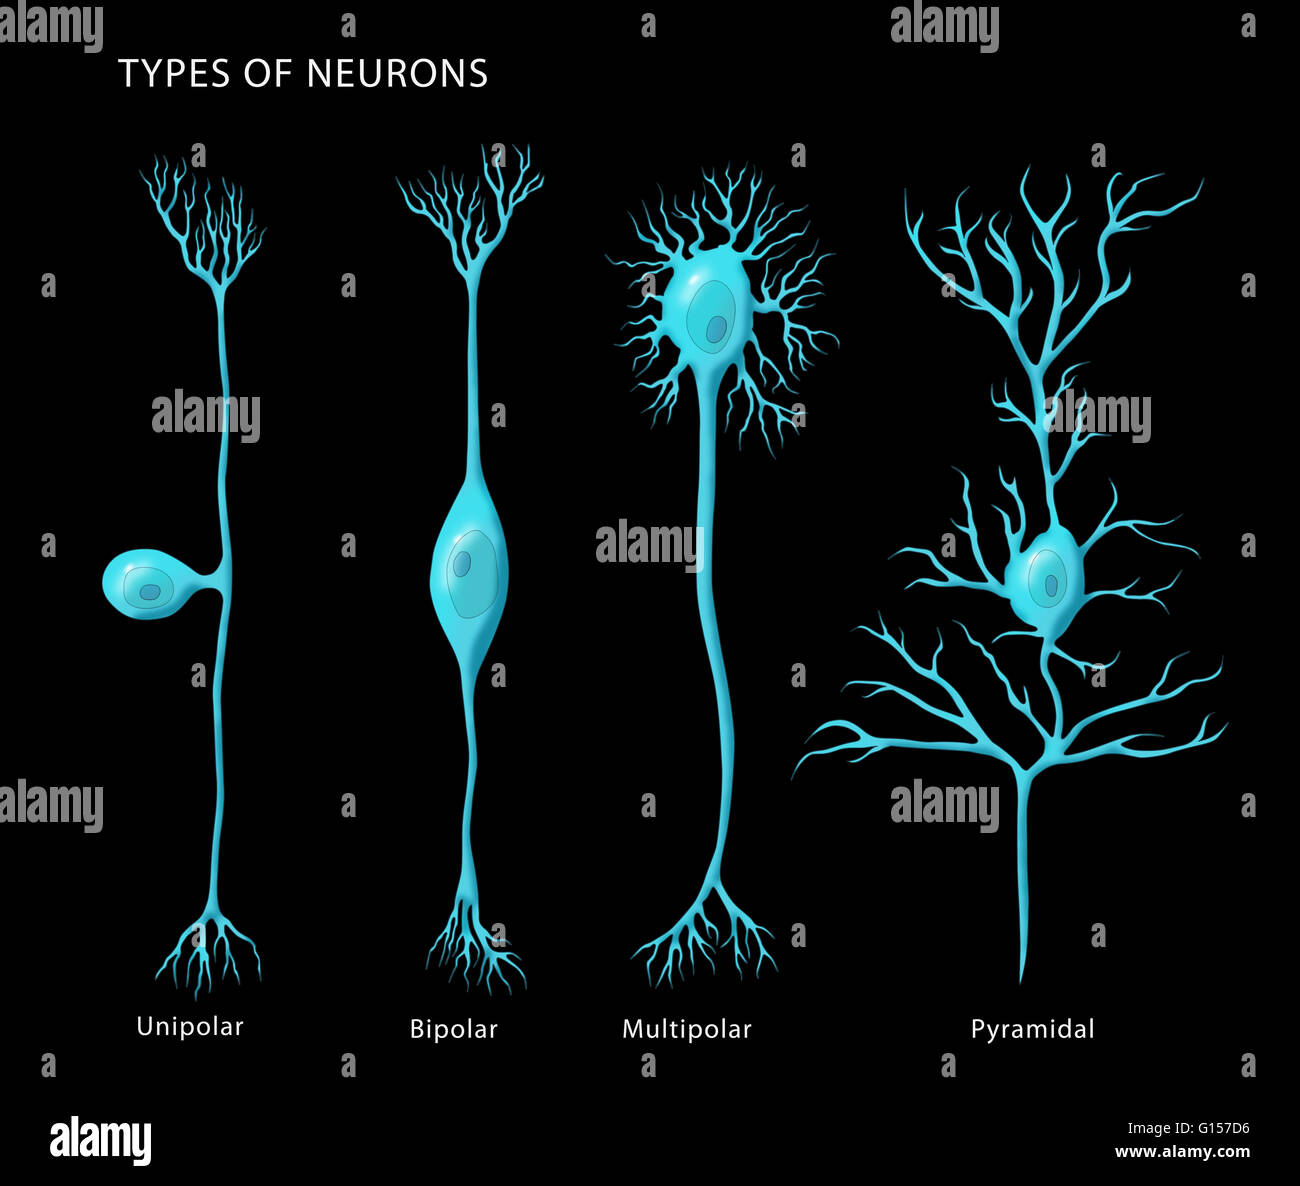 Illustration de l'étiquette de base les types de neurones, de gauche à droite : unipolaire, bipolaire, multipolaire, et pyramidale. Banque D'Images